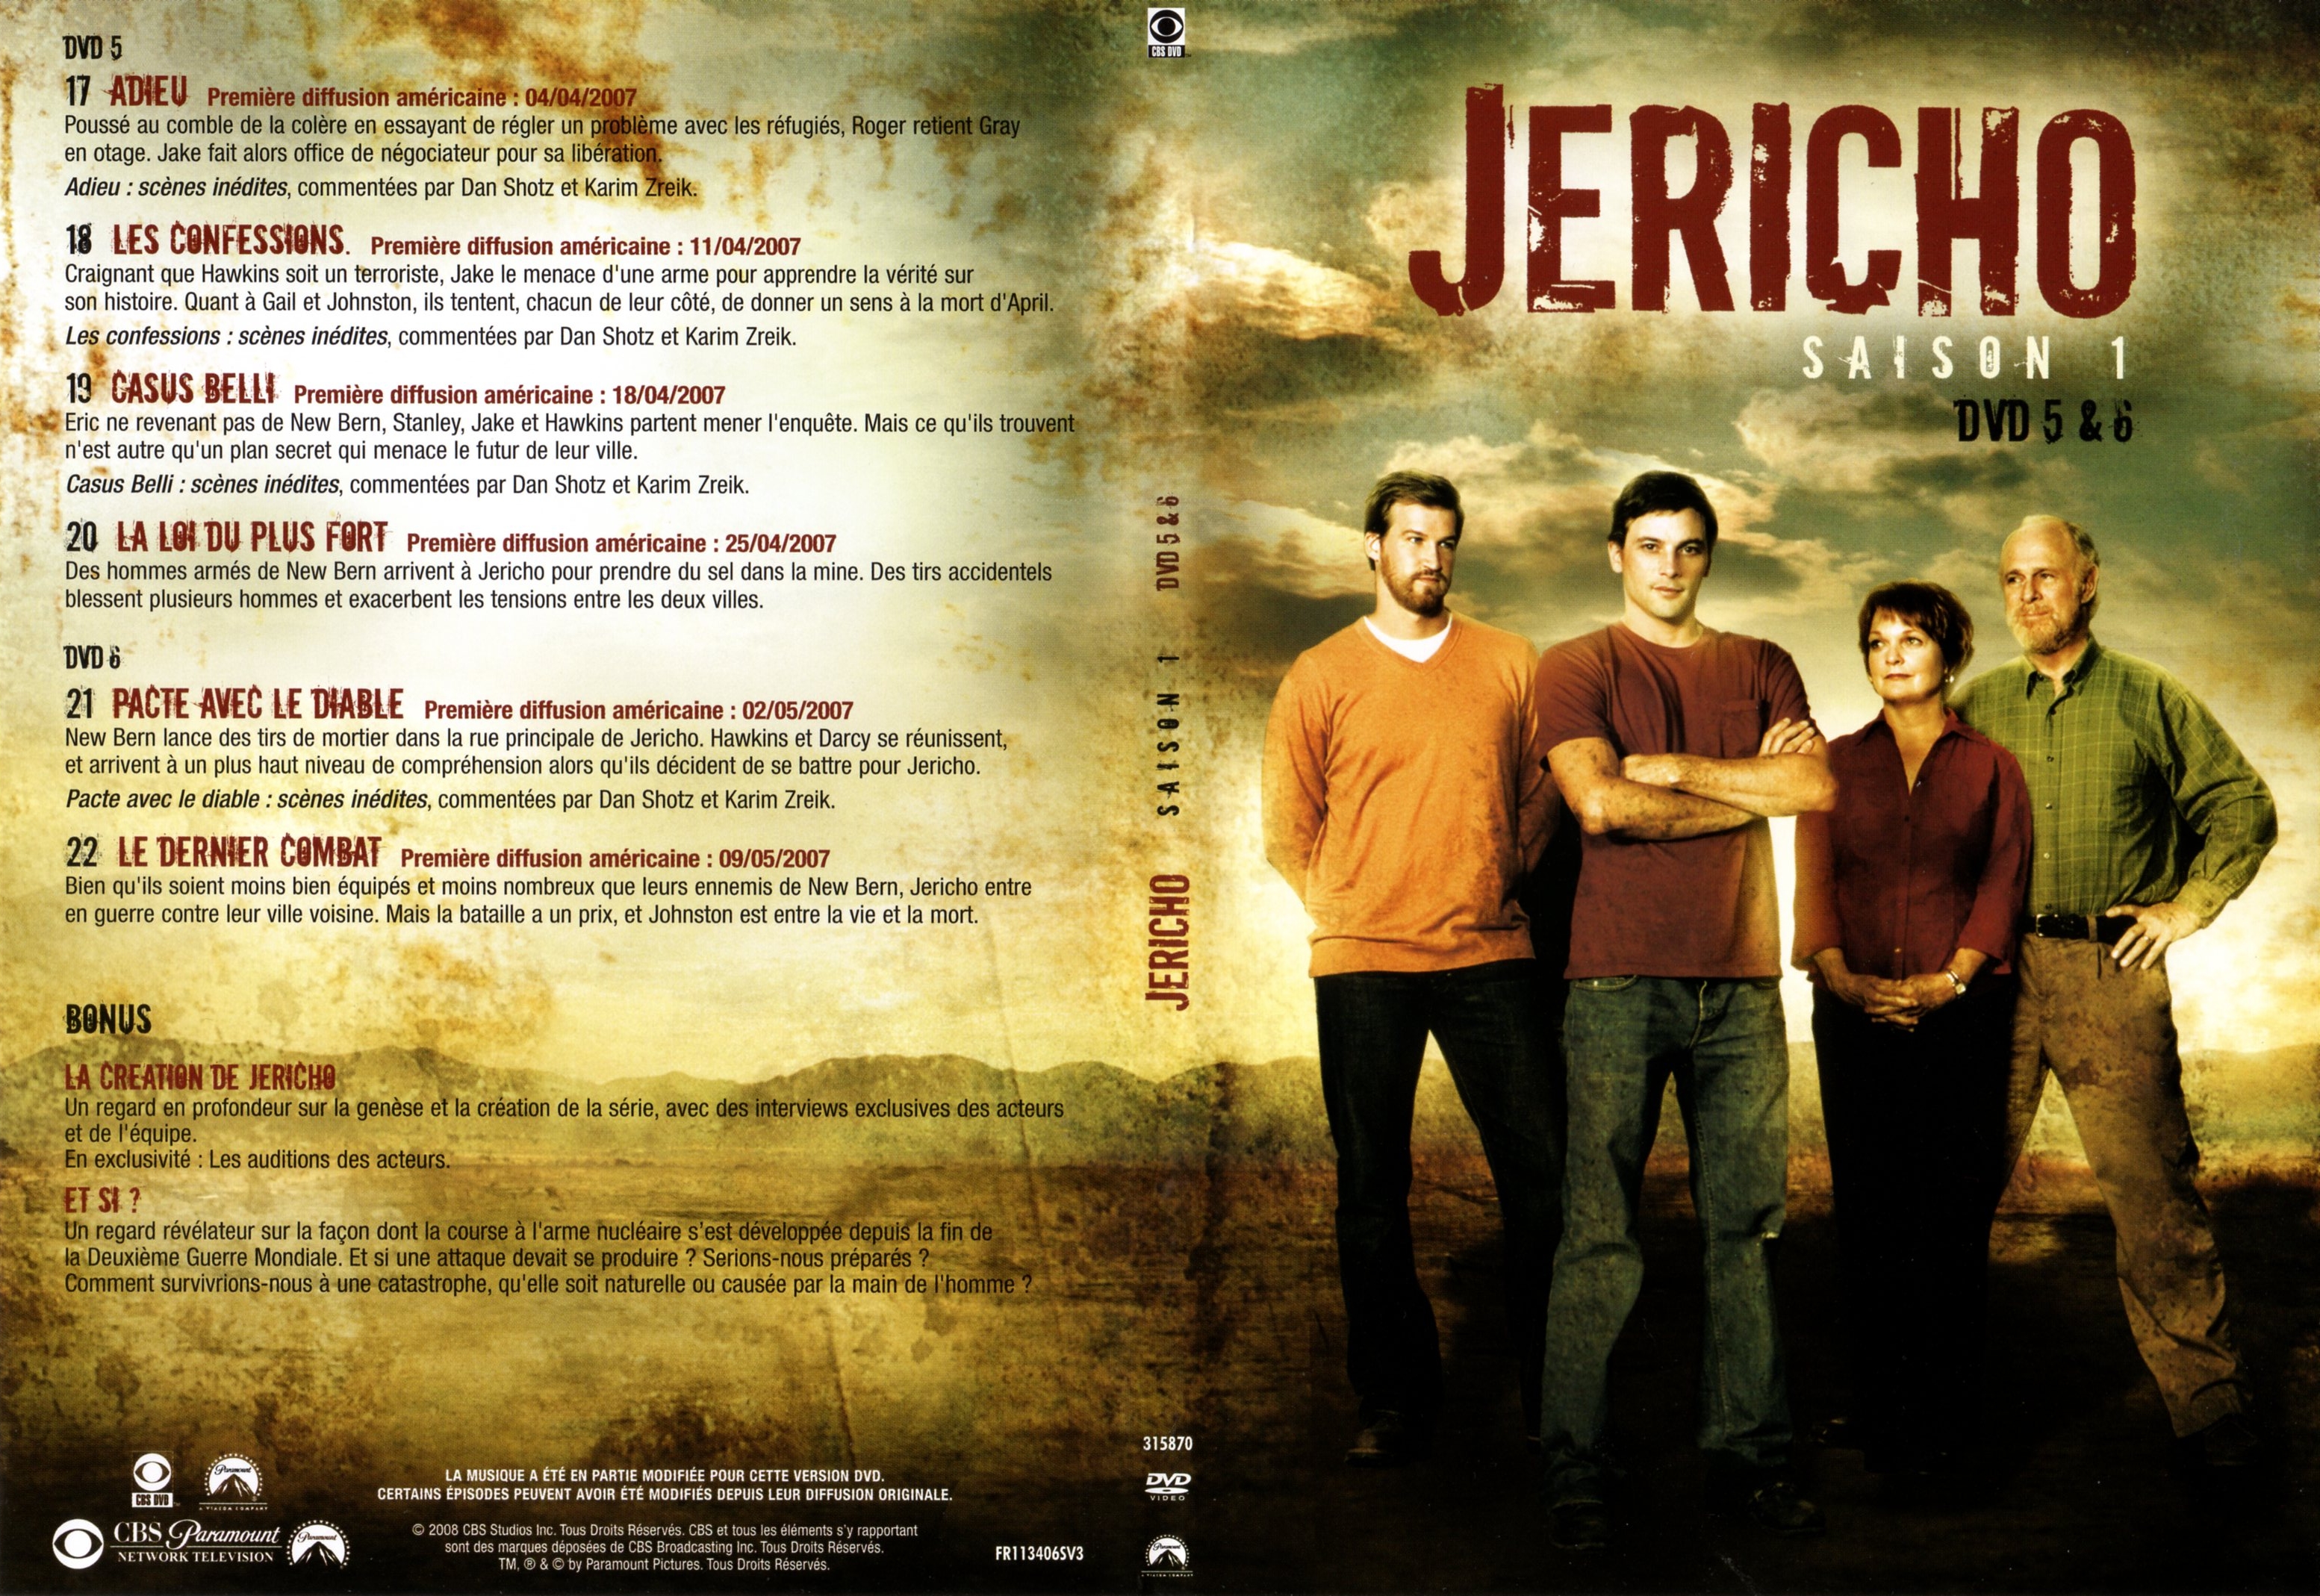 Jaquette DVD Jericho Saison 1 DVD 3